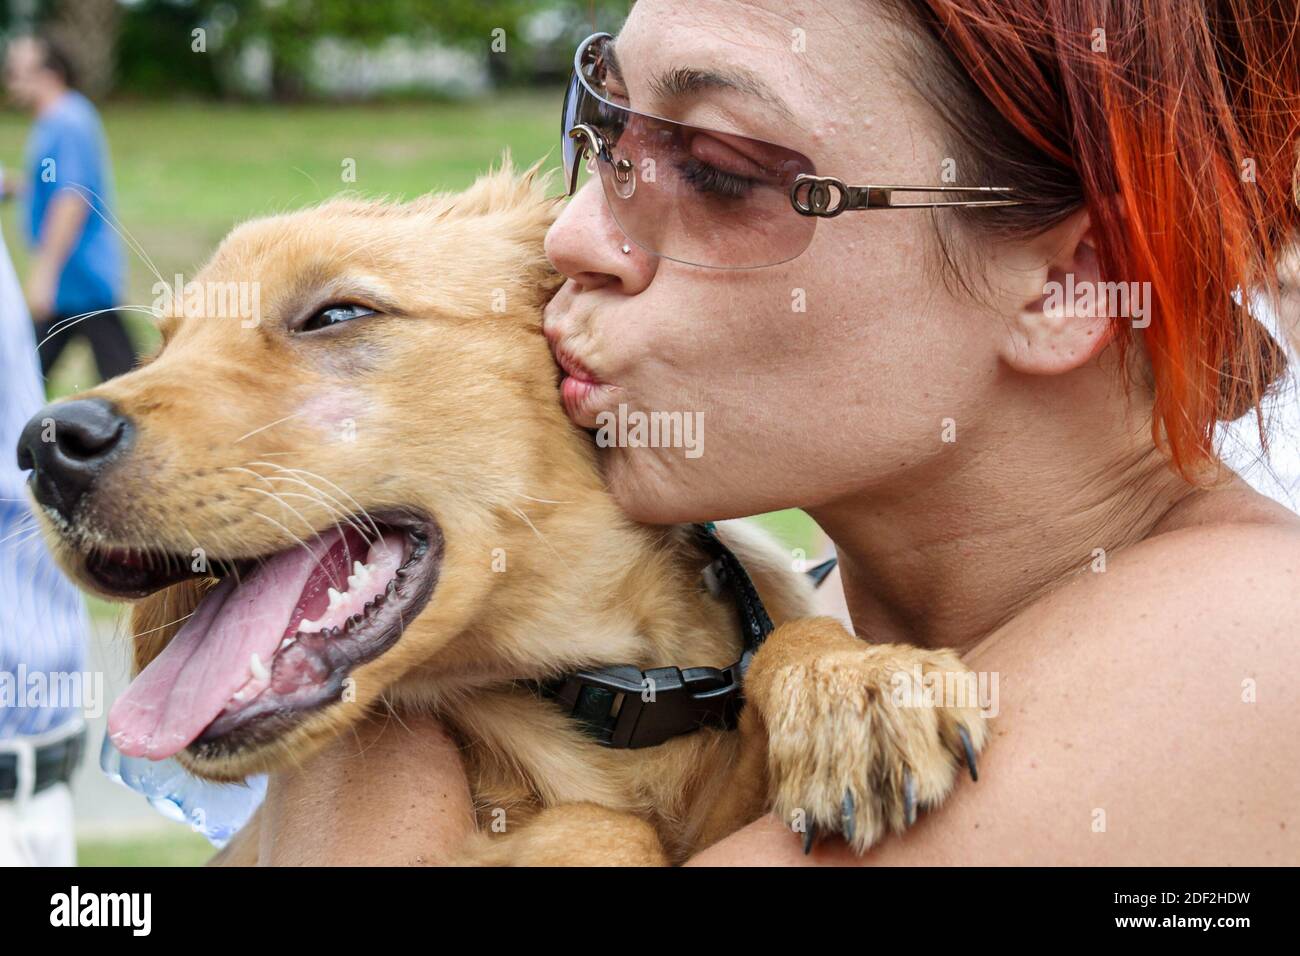 Miami Florida, Coconut Grove Peacock Park, femme hispanique chien animal de compagnie tenant des baisers, Banque D'Images